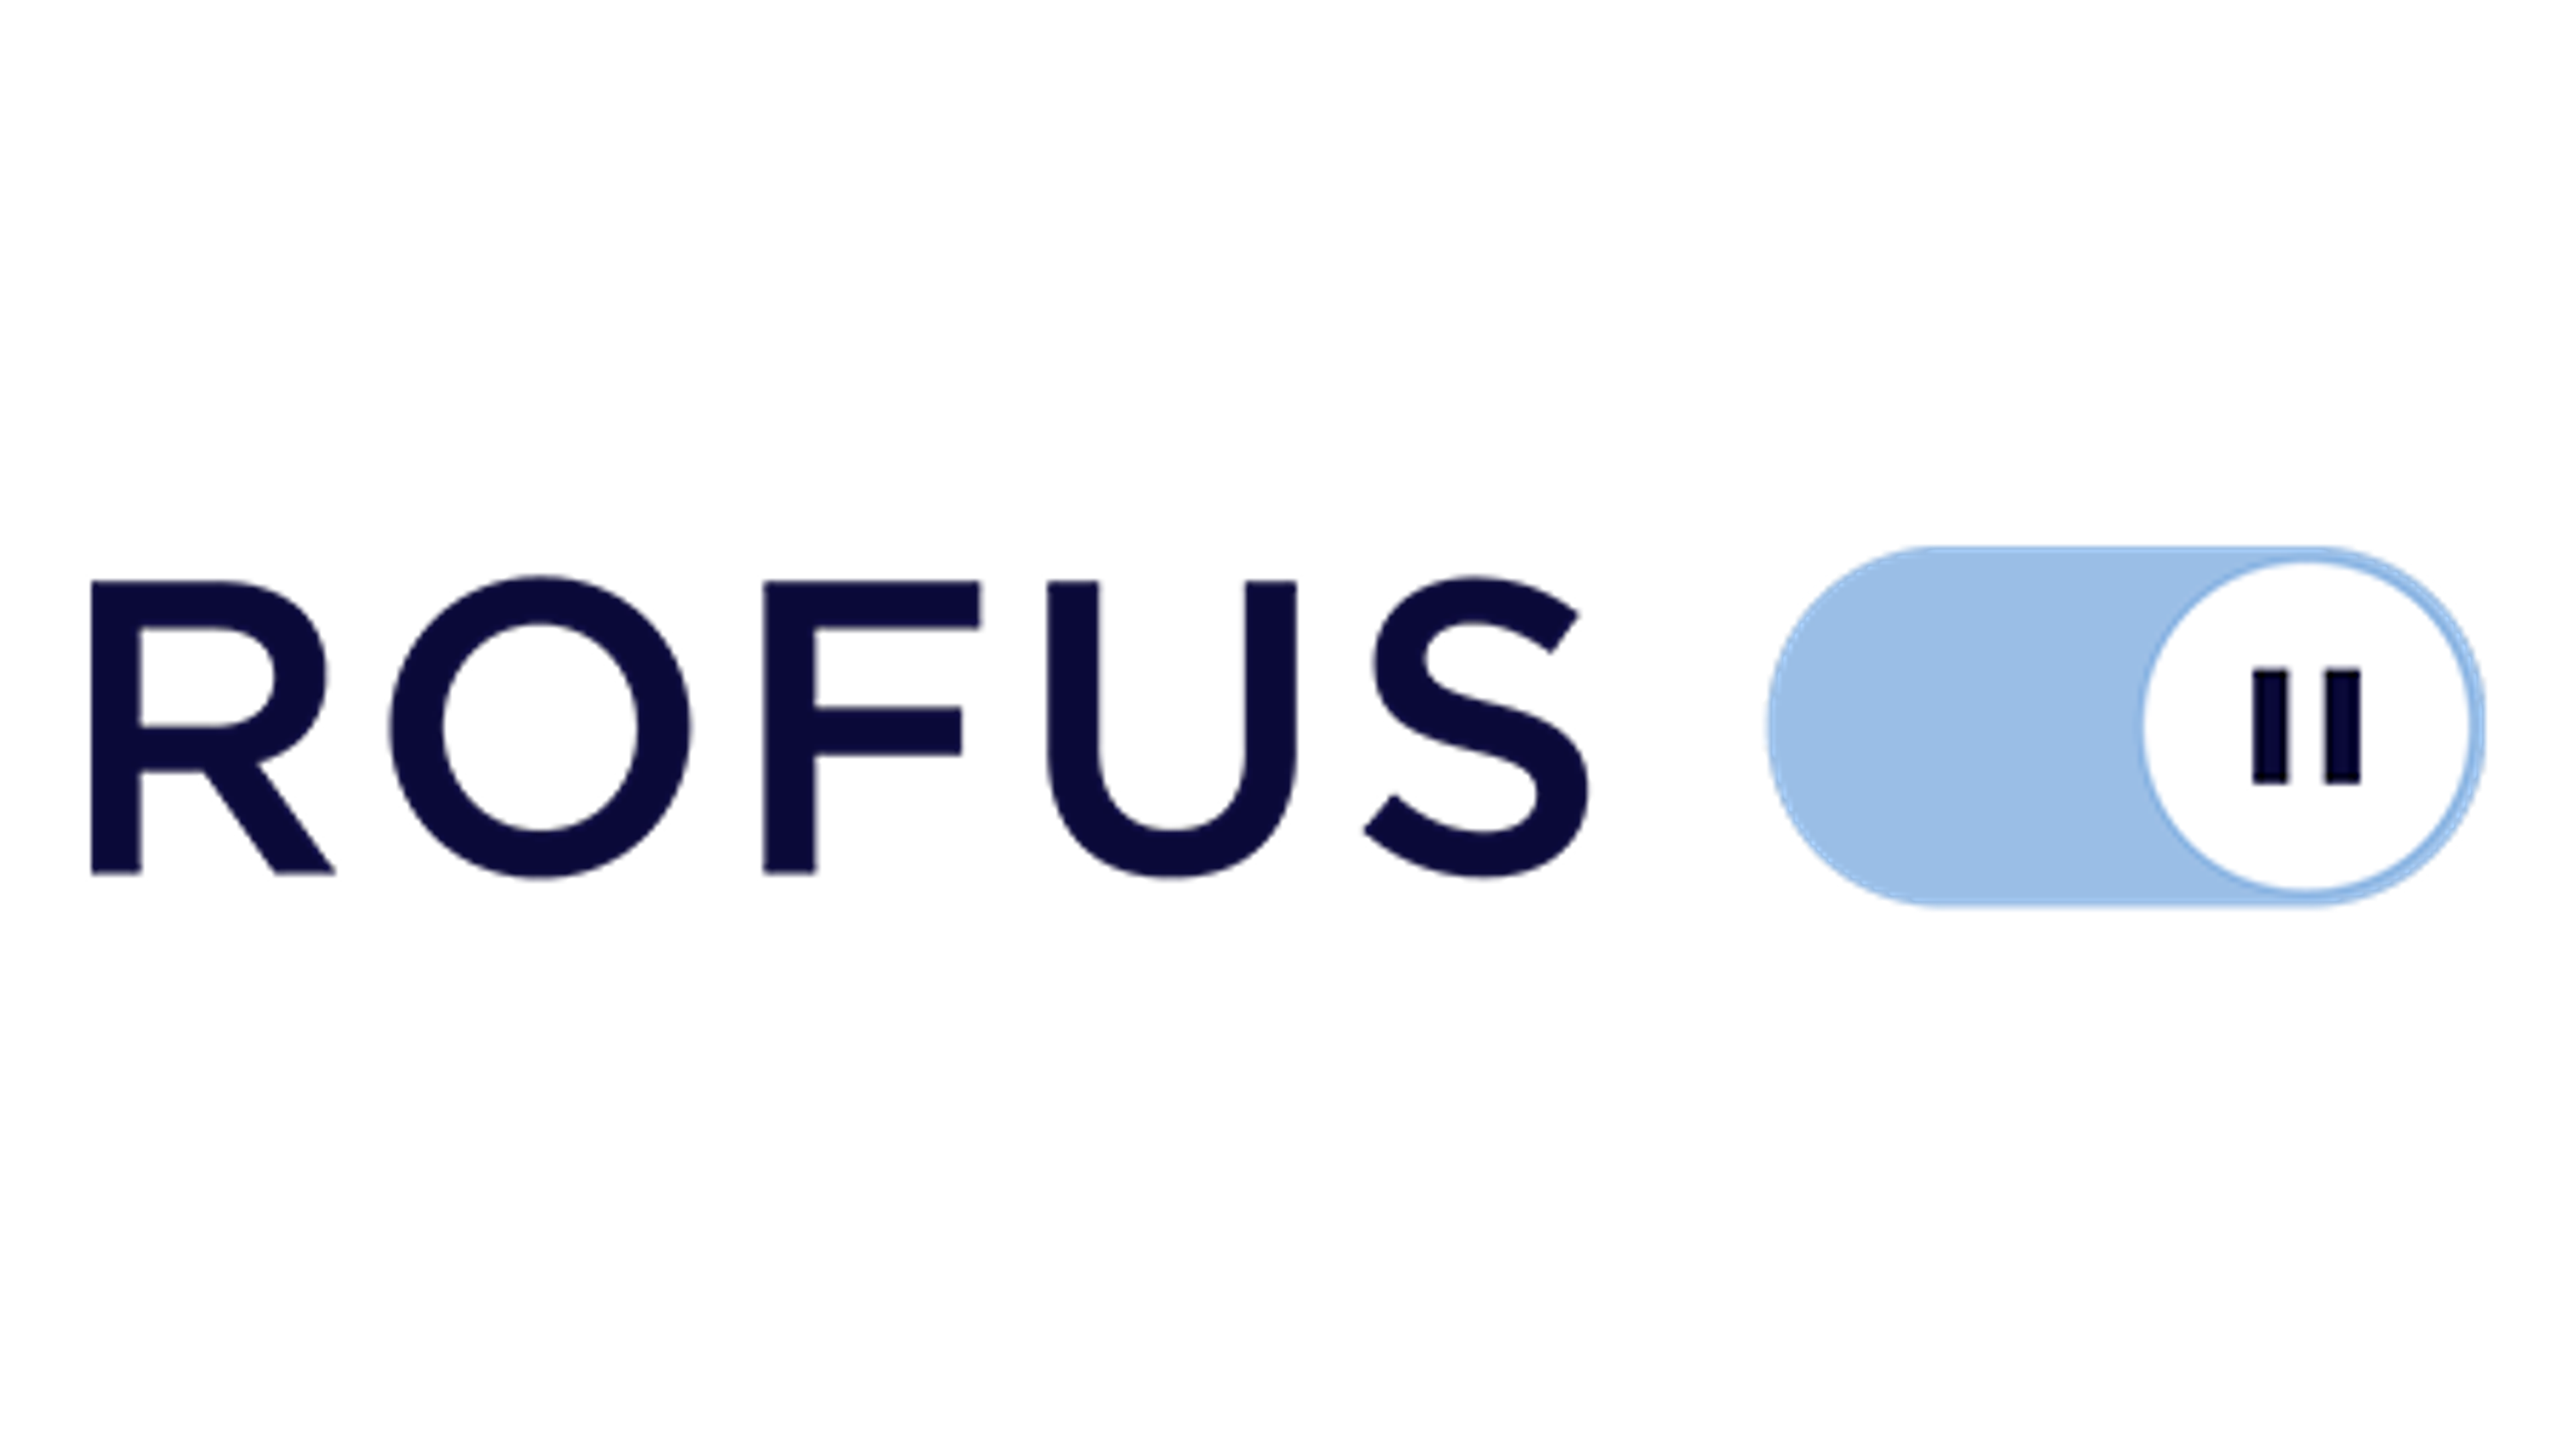 På billedet ses et logo af ROFUS. Der står ROFUS med store bogstaver, og så er der et symbol af en pauseknap.